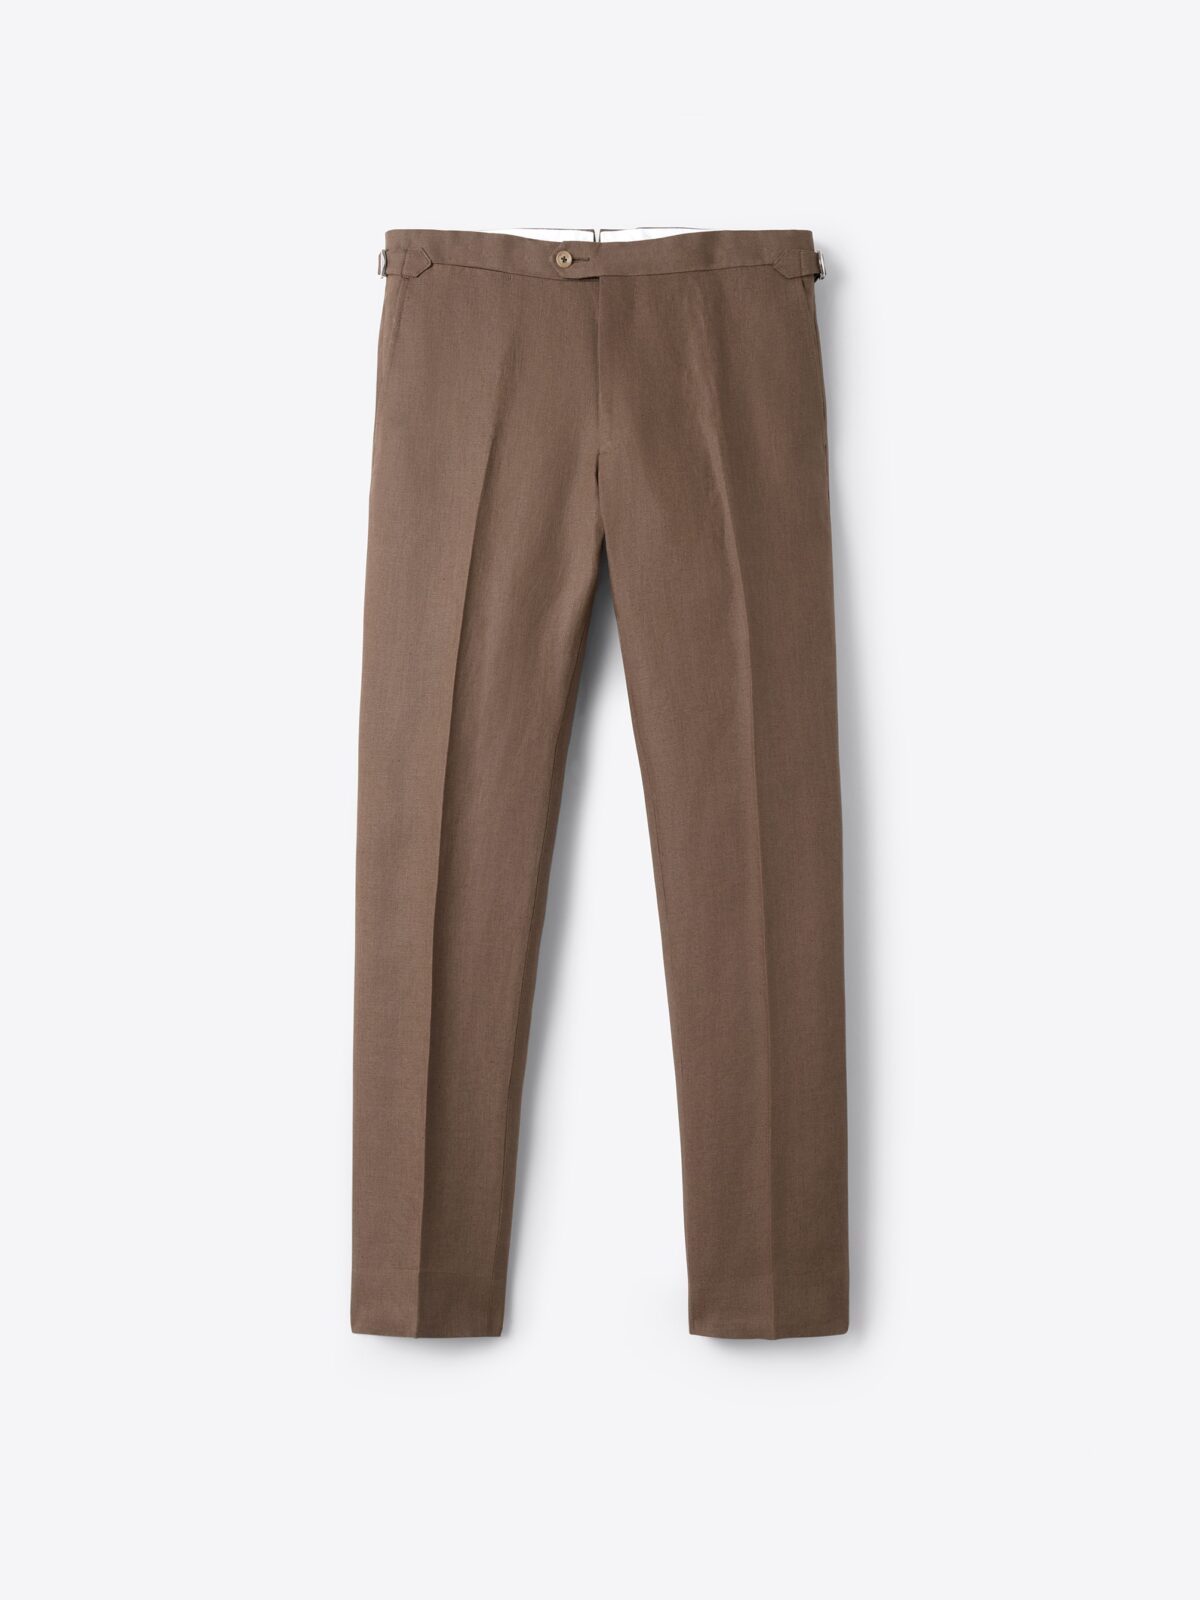 Brown Linen Pants